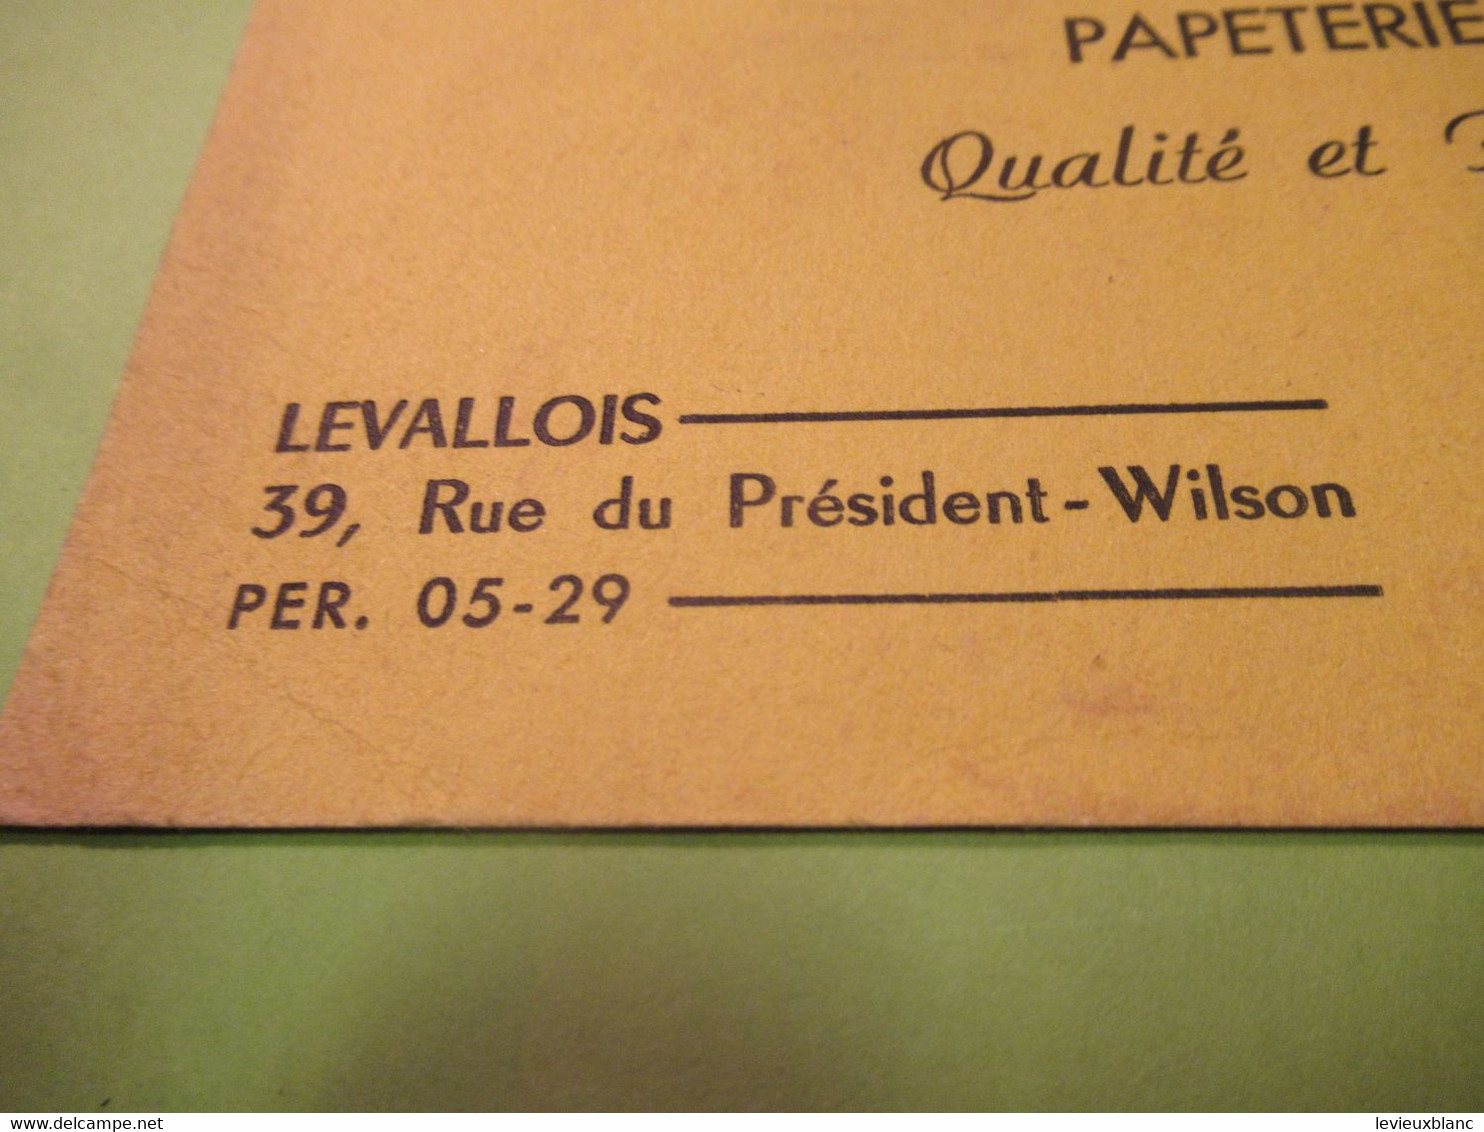 Buvard Ancien/Librairie /Papeterie Scolaire/ Tout Pour Lire,écrire, Dessiner/LEVALLOIS/ NANTERRE/Vers 1950-60     BUV592 - Papeterie